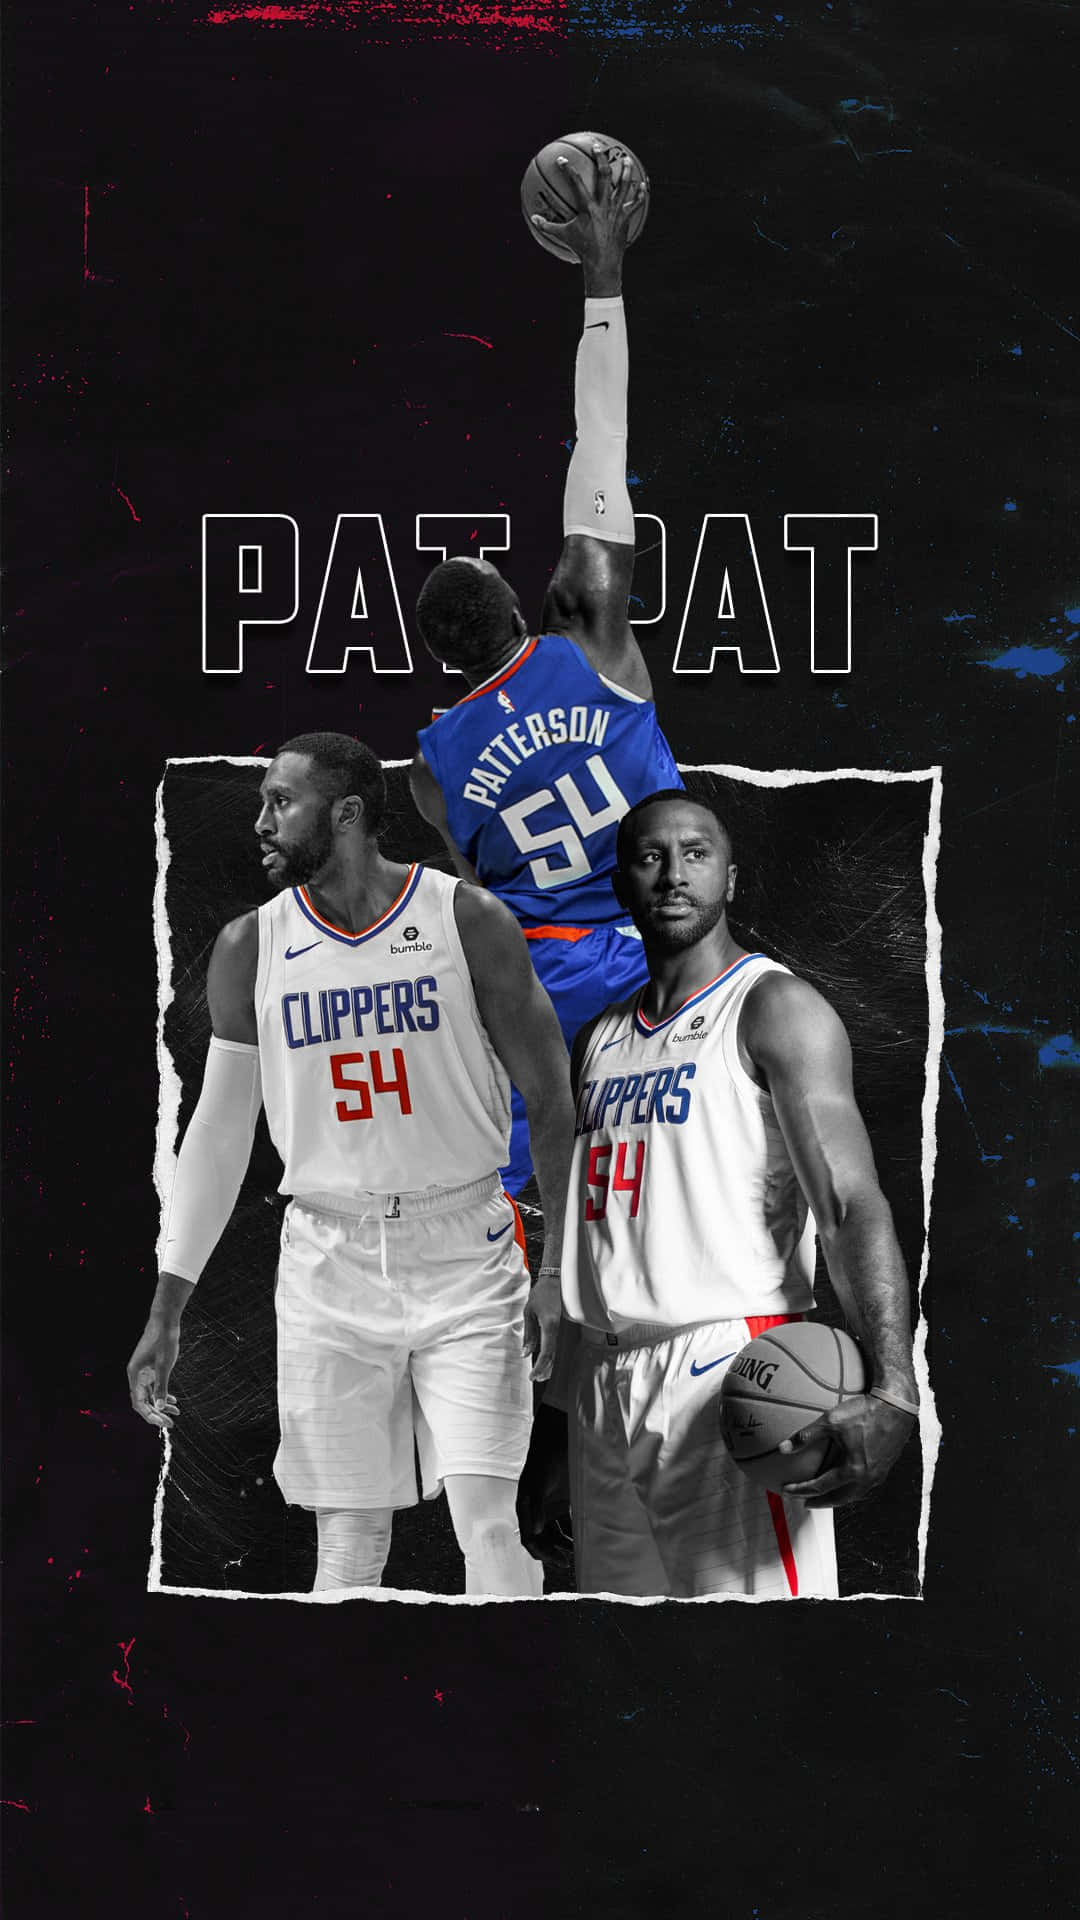 Ilustracióndel Destacado Atleta De Los La Clippers, Paul George. Fondo de pantalla